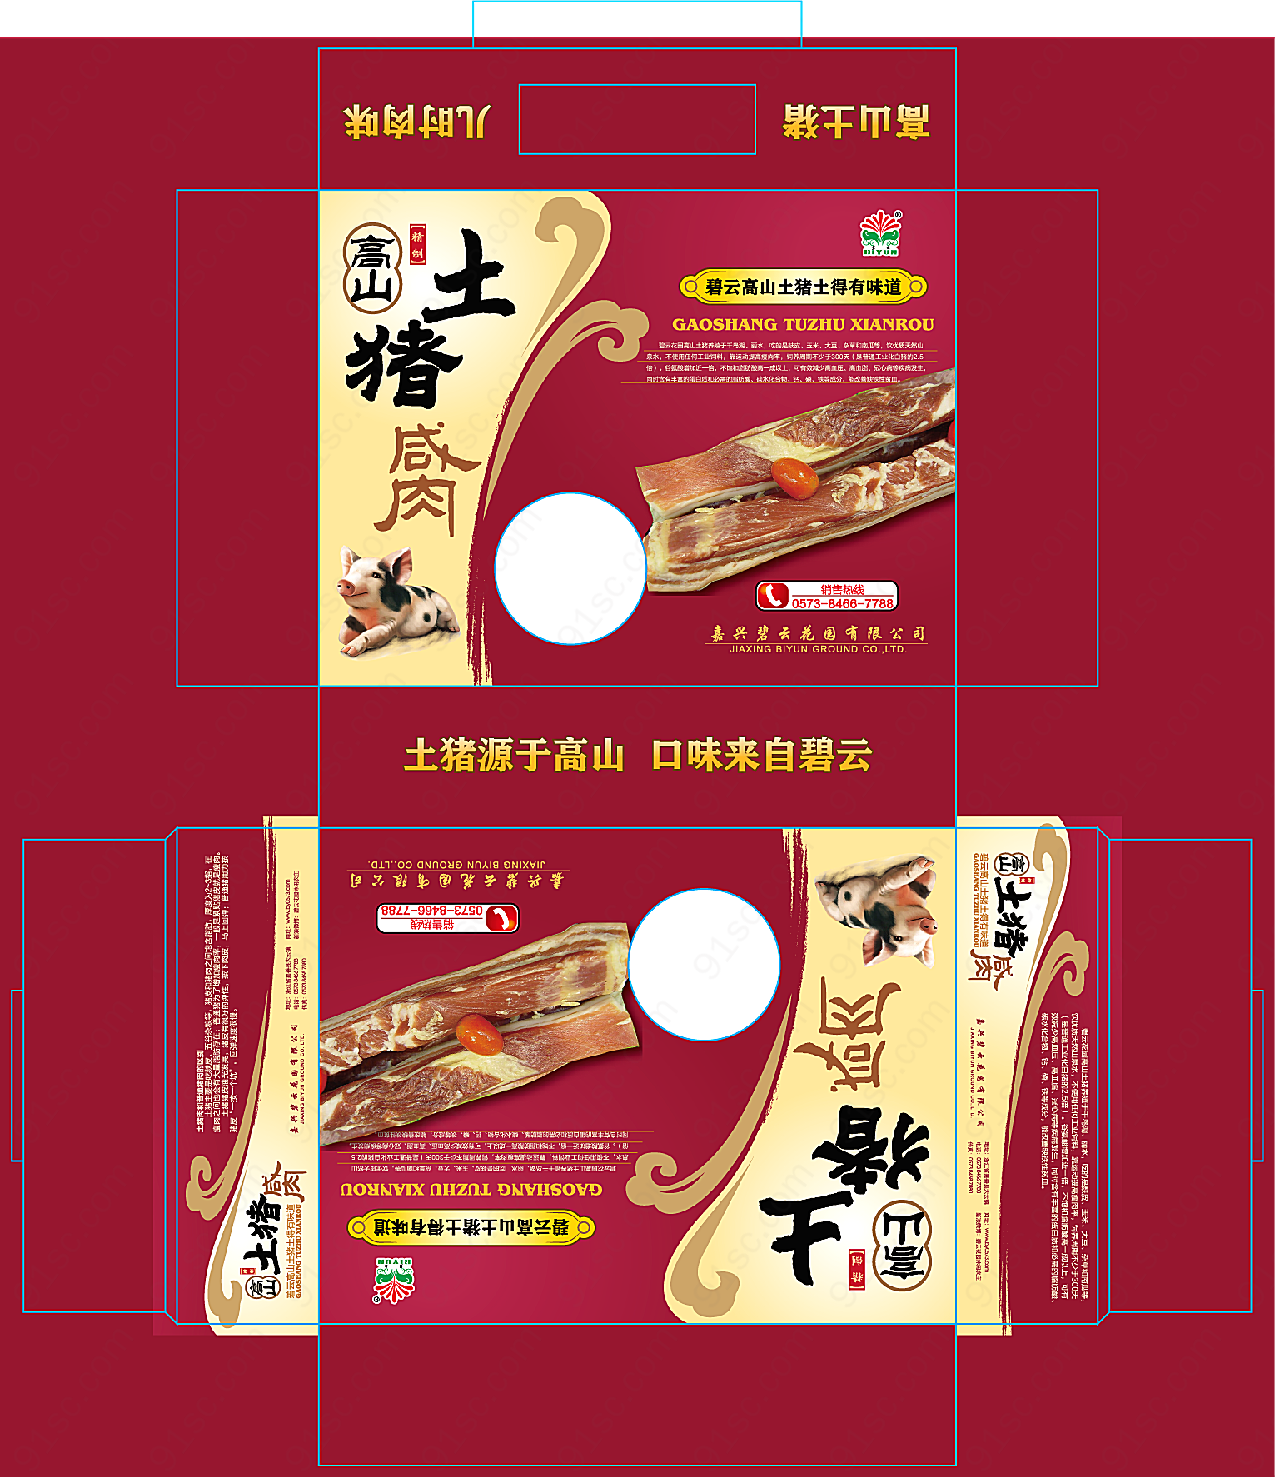 土猪咸肉食品包装矢量包装设计